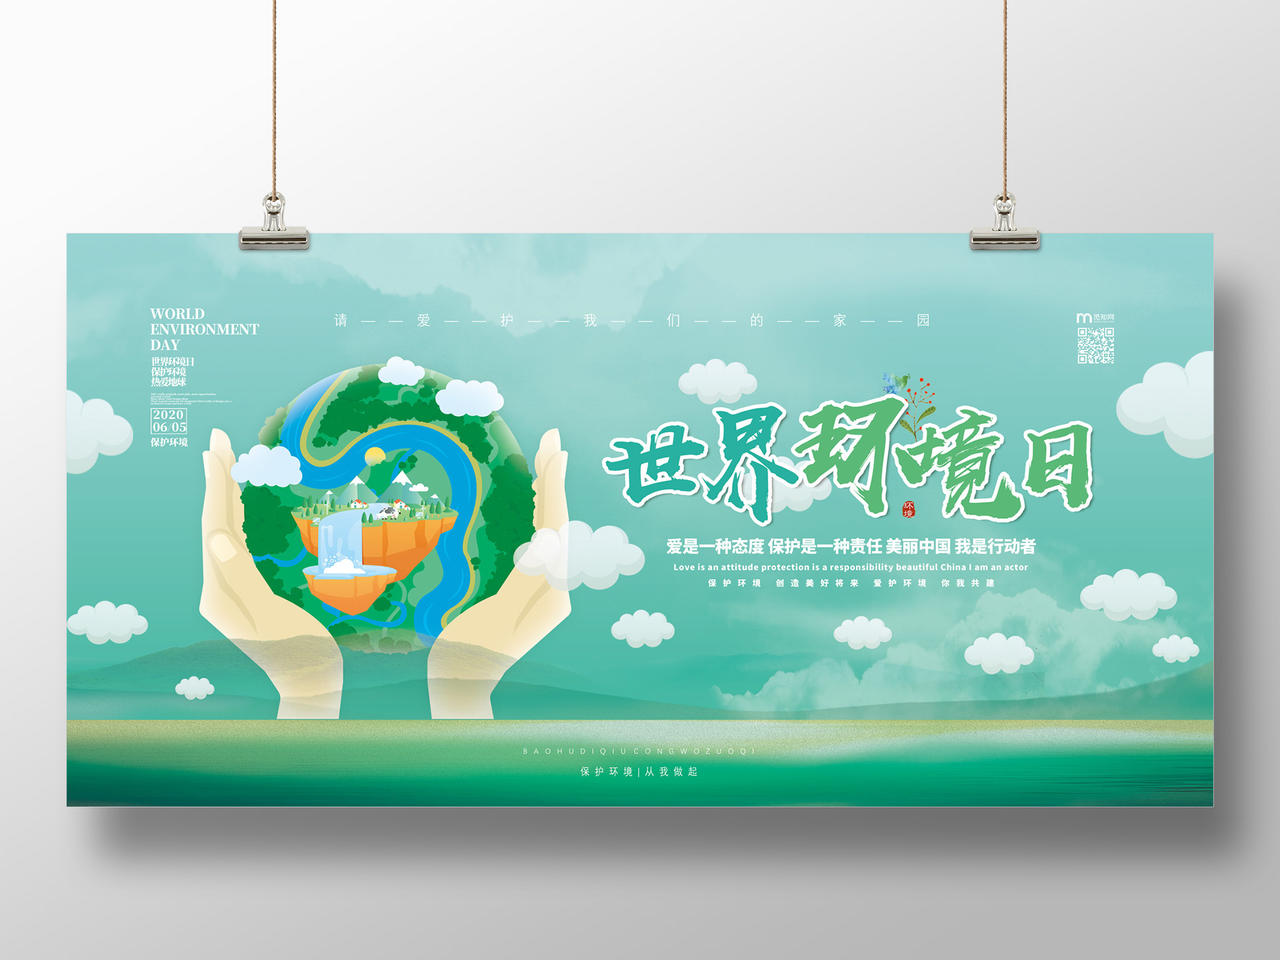 绿色手绘绿水青山请爱护我们的家园6月5日世界环境日宣传展板